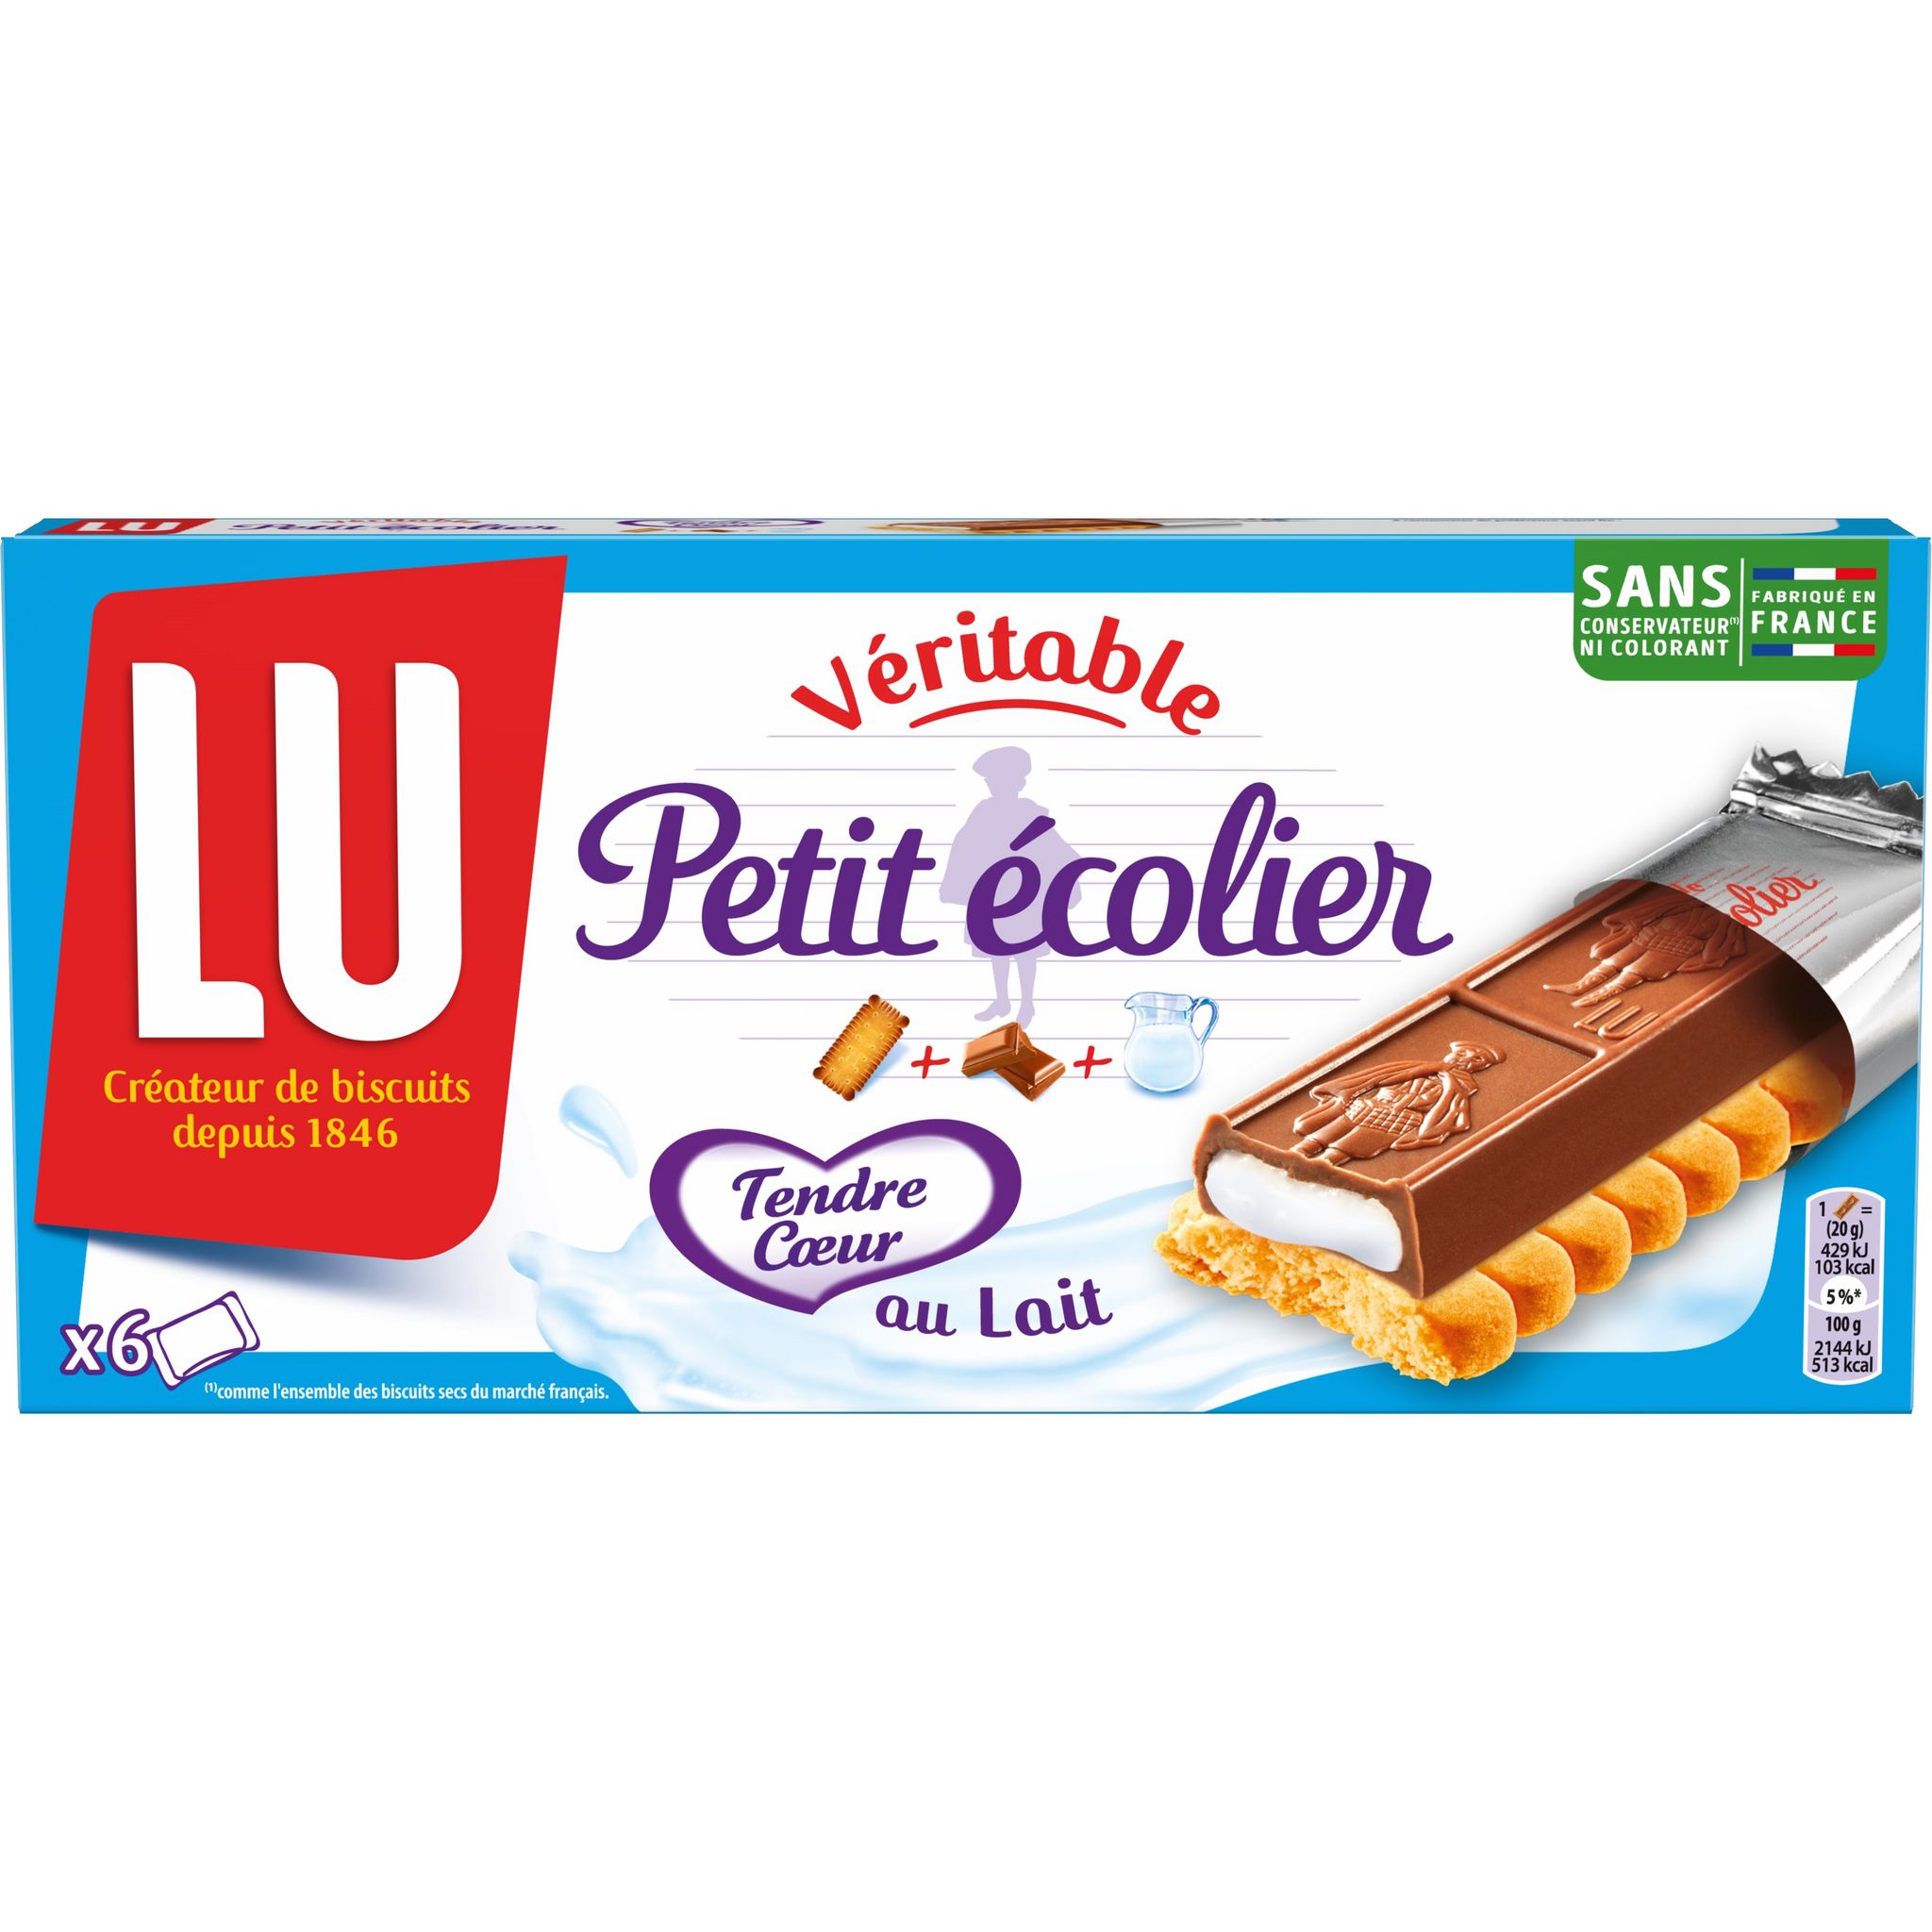 AUCHAN Gaufrettes fourrées enrobées de chocolat 16 biscuits 150g pas cher 